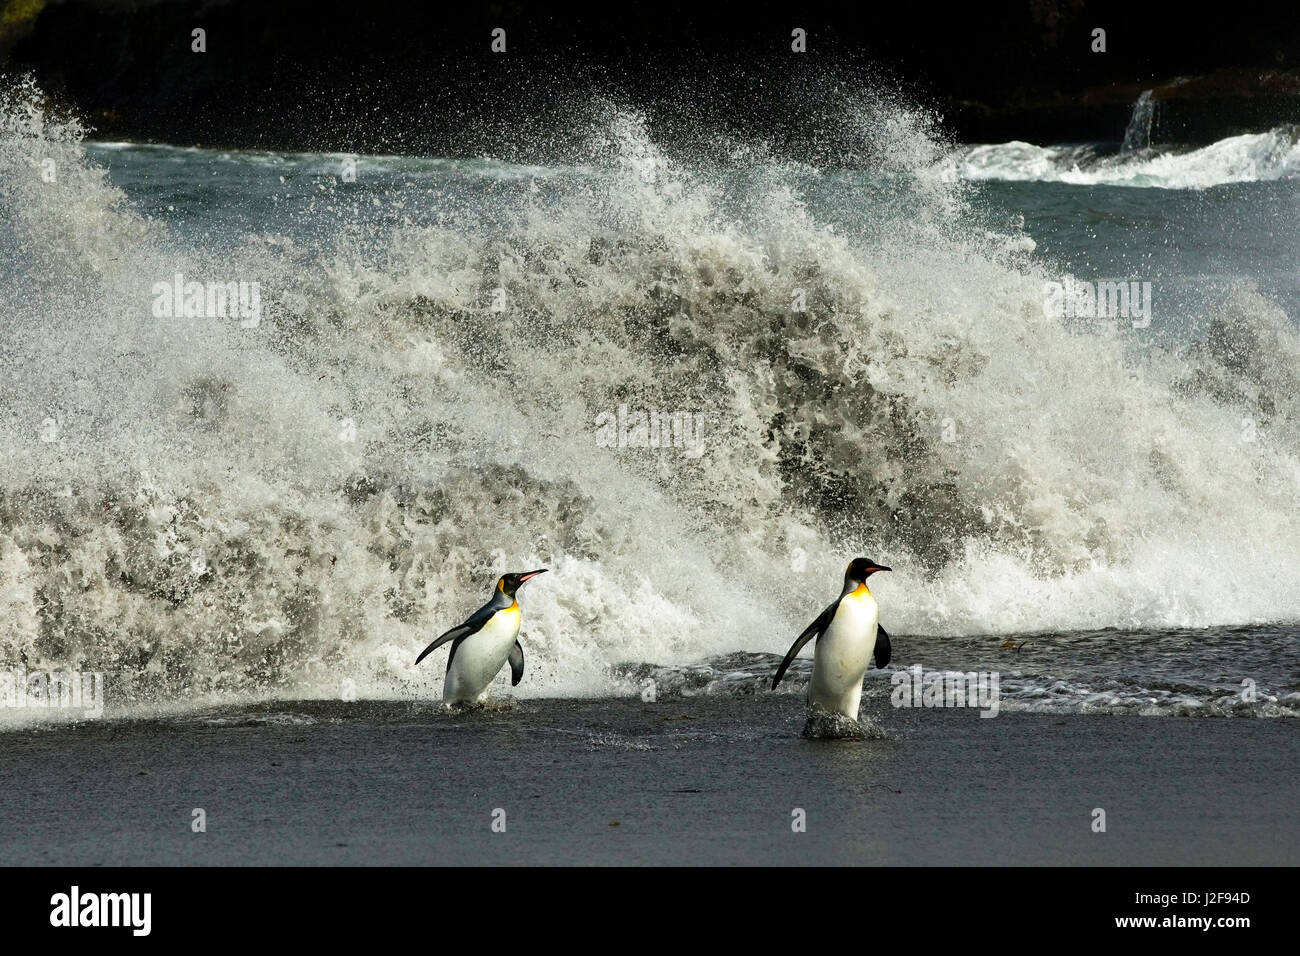 Königspinguine kommen an Land bei Sturm mit riesigen Wellen Stockfoto